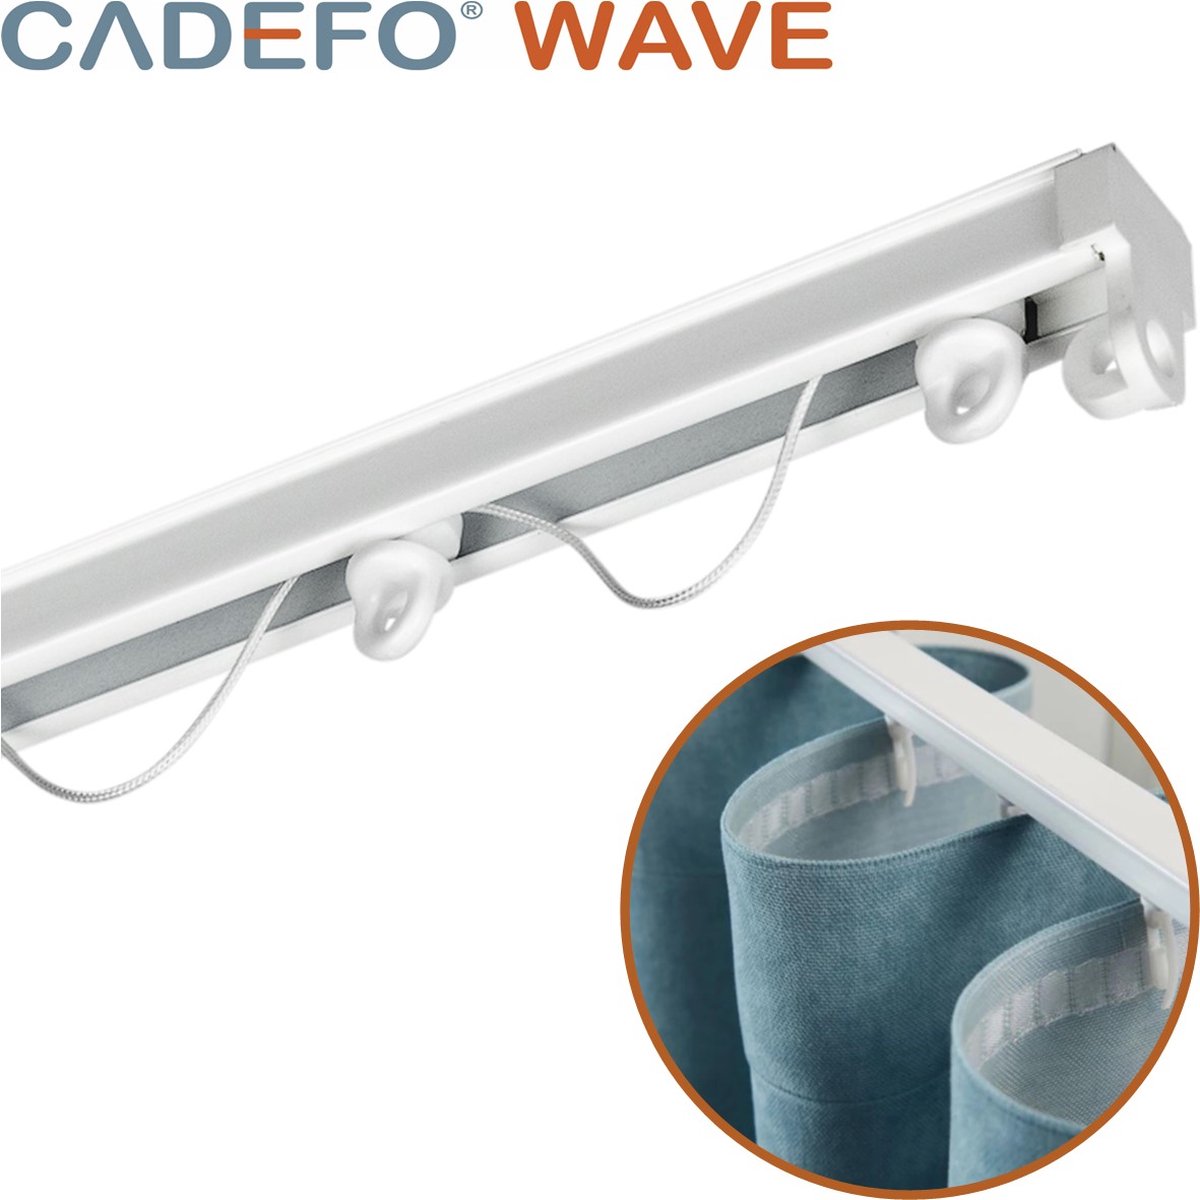 CADEFO WAVE (351 - 400 cm) Gordijnrails - Compleet op maat! - UIT 1 STUK - Leverbaar tot 6 meter - Plafondbevestiging - Lengte 370 cm